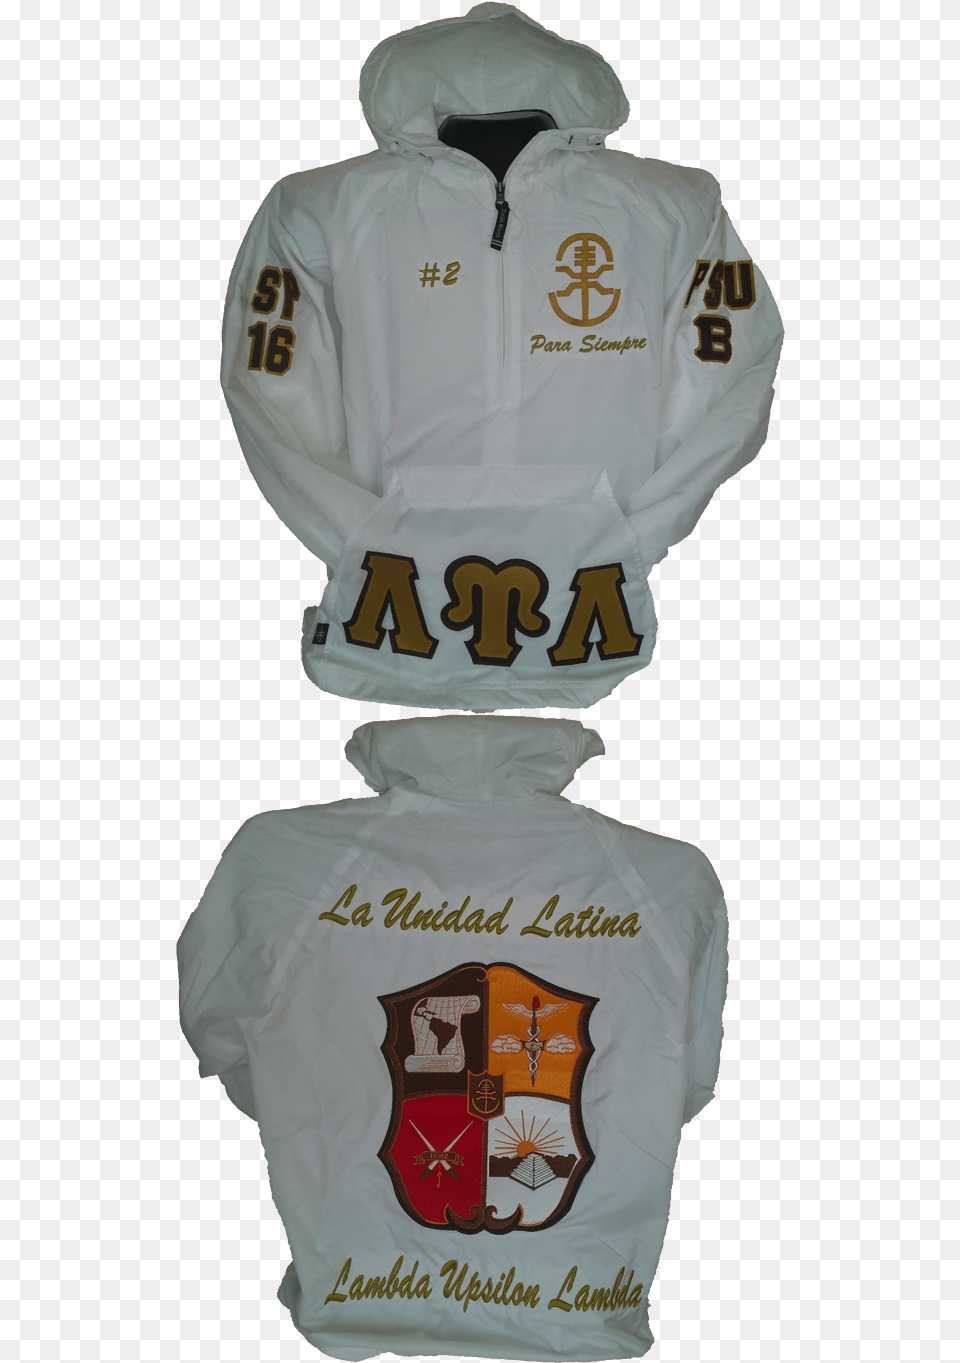 Lambda Upsilon Lambda Jacket, Sweatshirt, Sweater, Knitwear, Hoodie Png Image